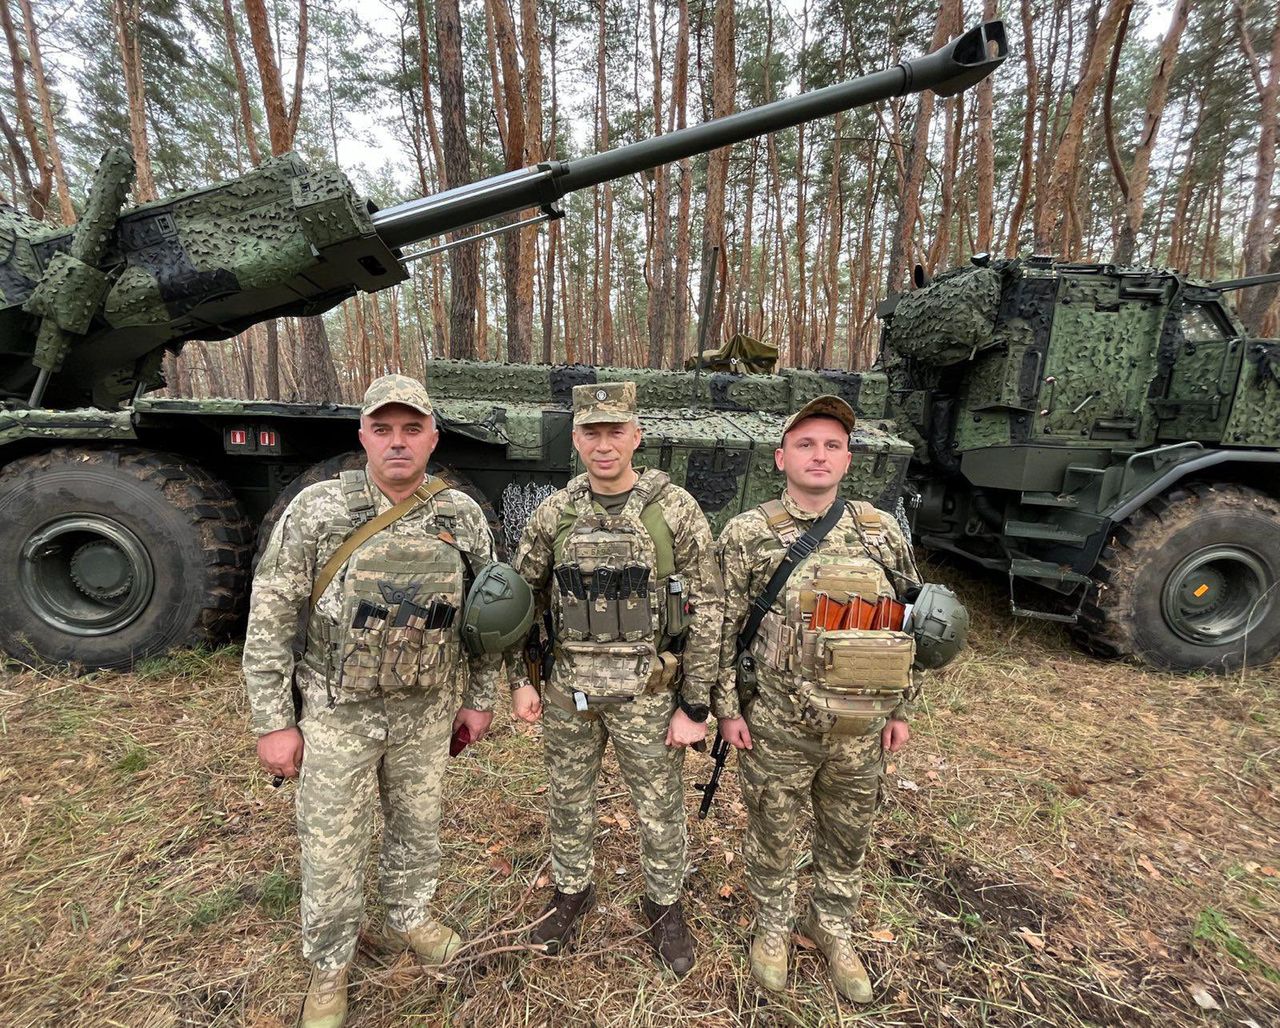 Ukraine flaunts the world's fastest howitzer